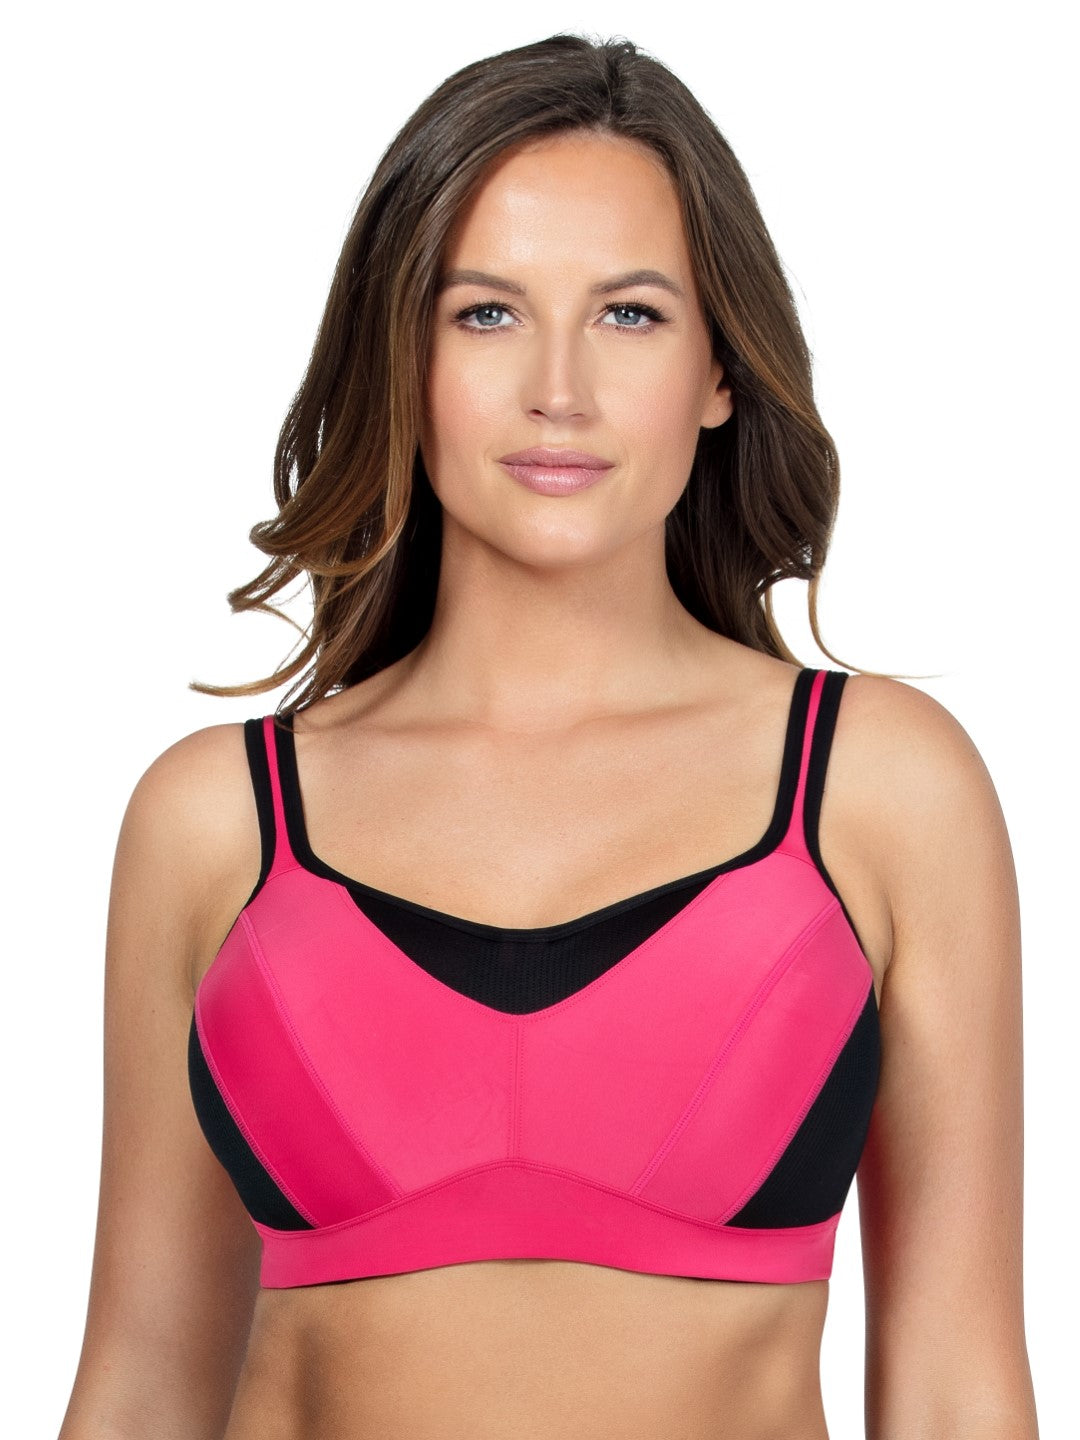 Tawop Plus Size Sports Bras for Women 4X-5X Women'S Vest Yoga Comfortable  Wireless Underwear Sports Bras Womens Underwear